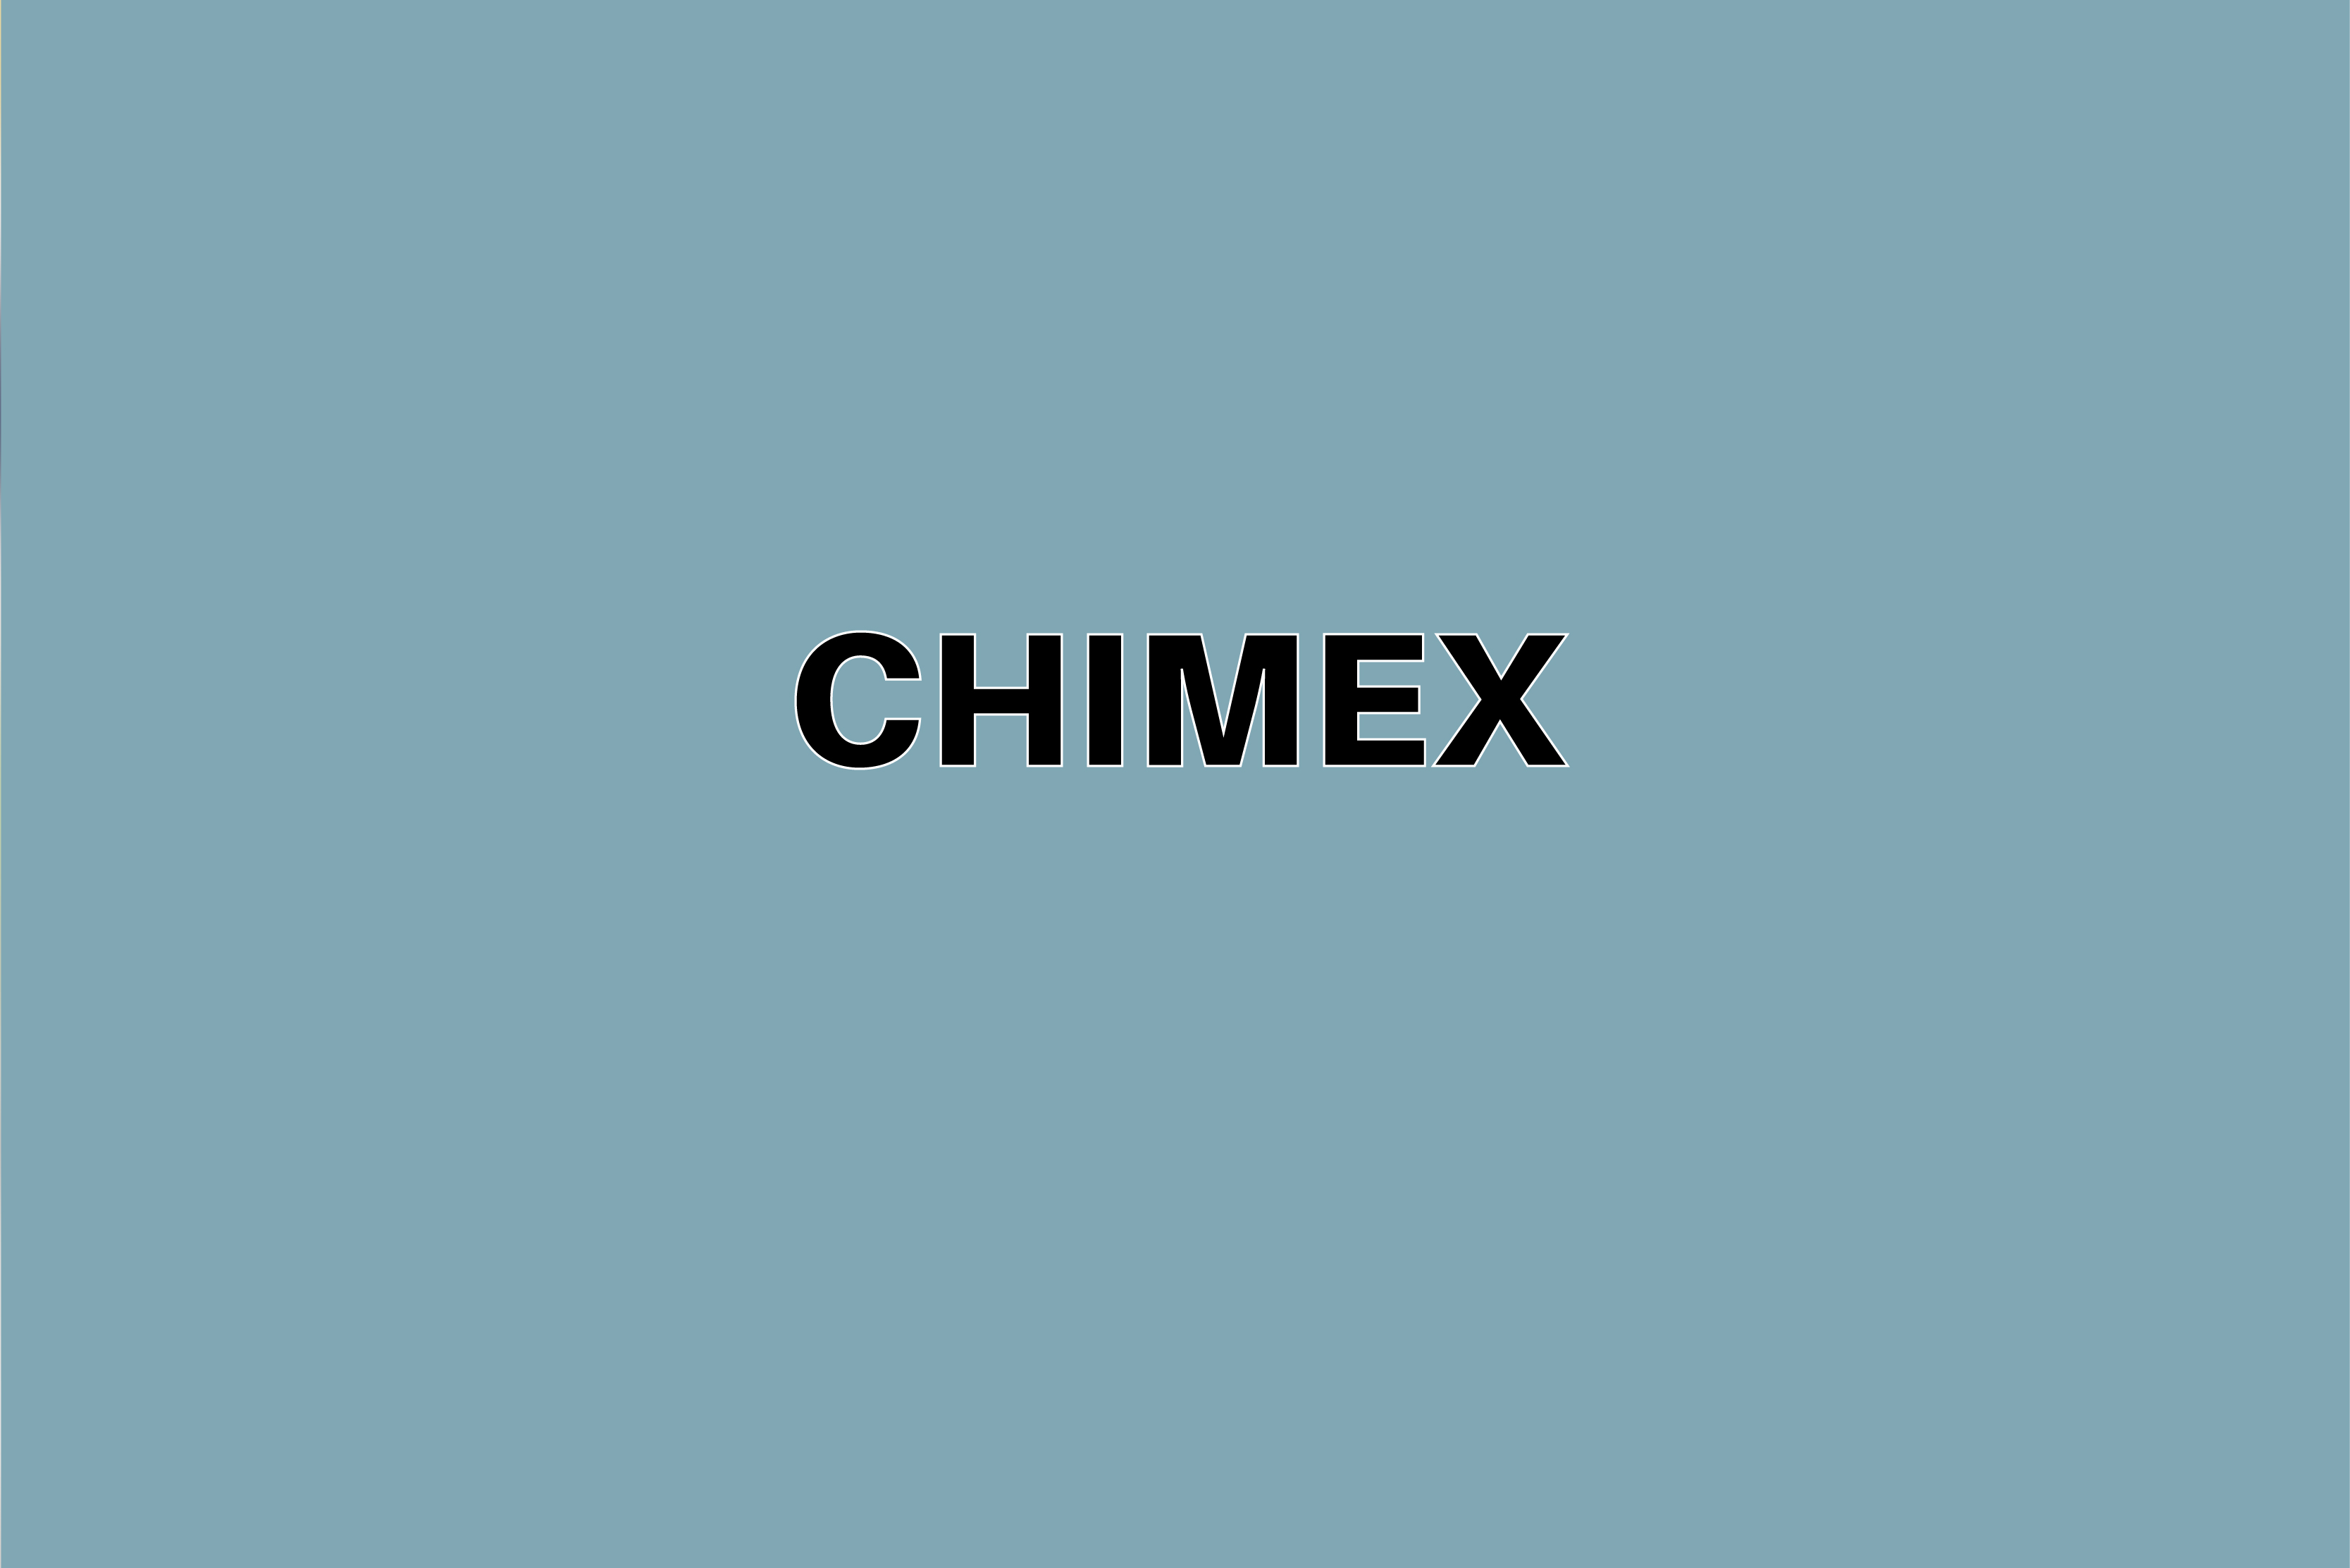 chimex reviews